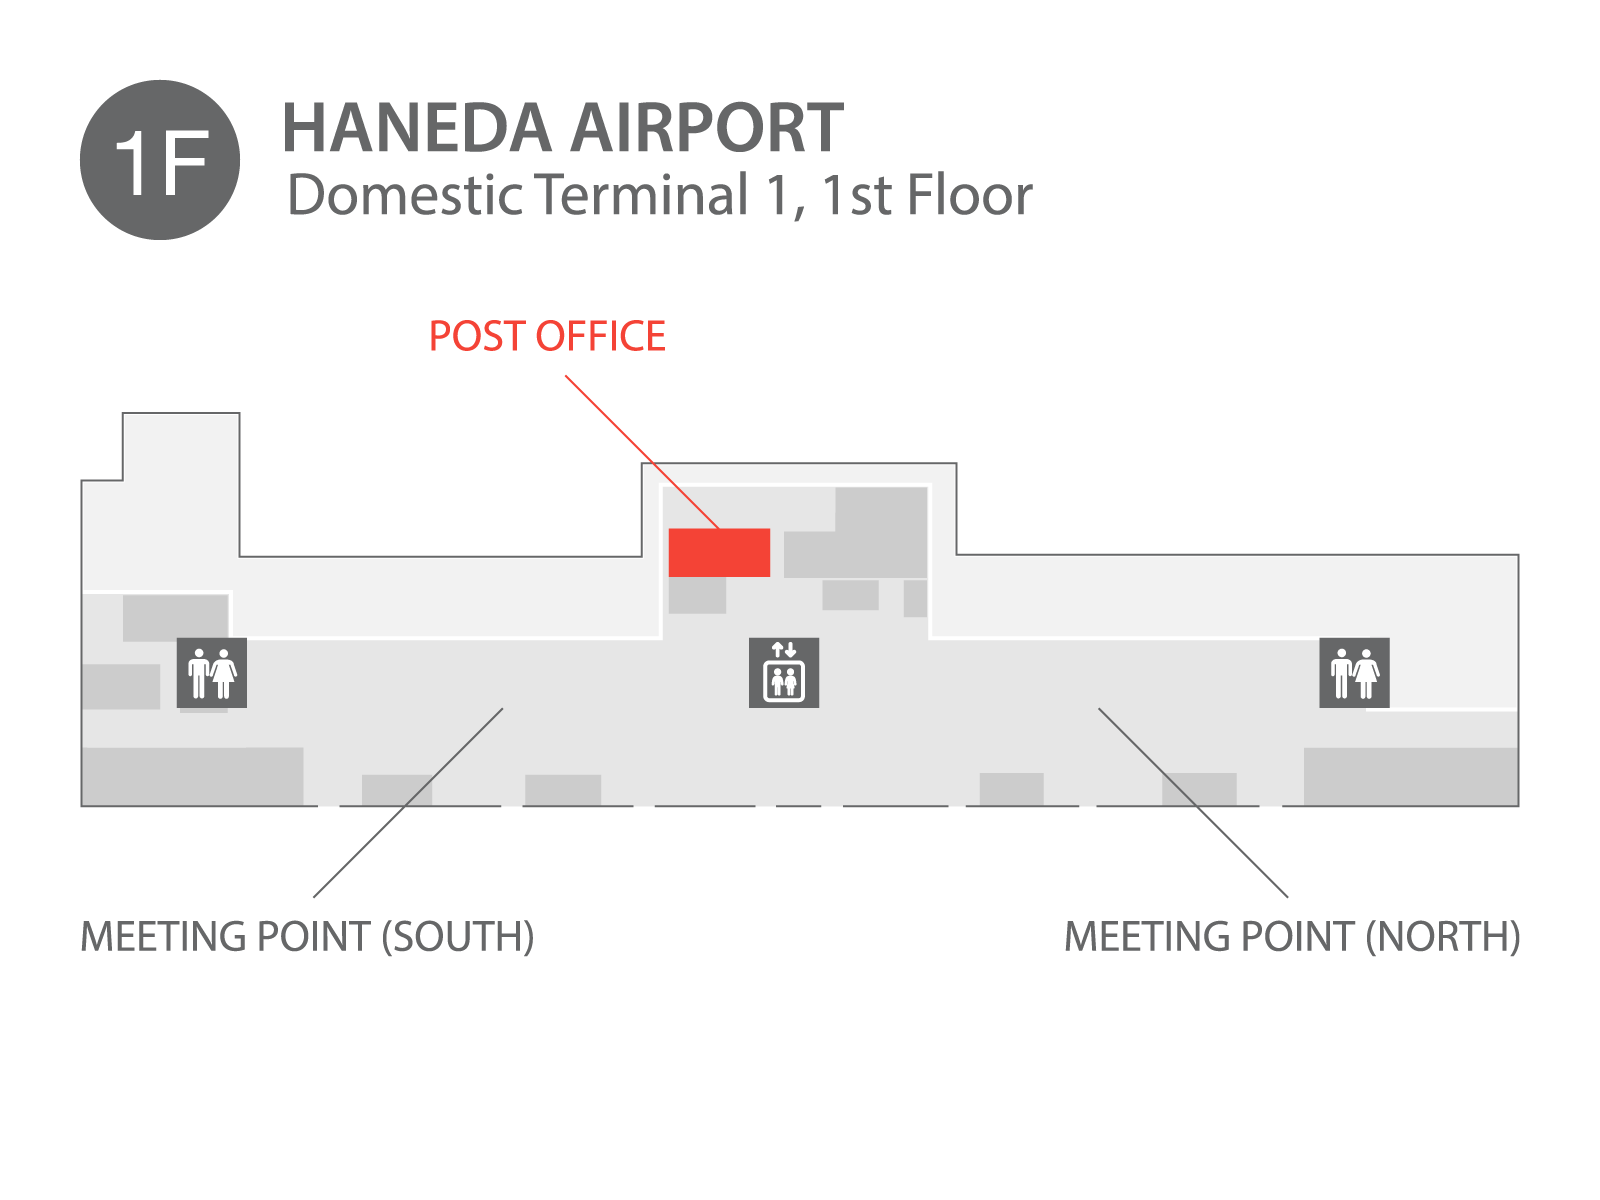 Haneda Airport Domestic Terminal 1 - Haneda airport Domestic Terminal 1.